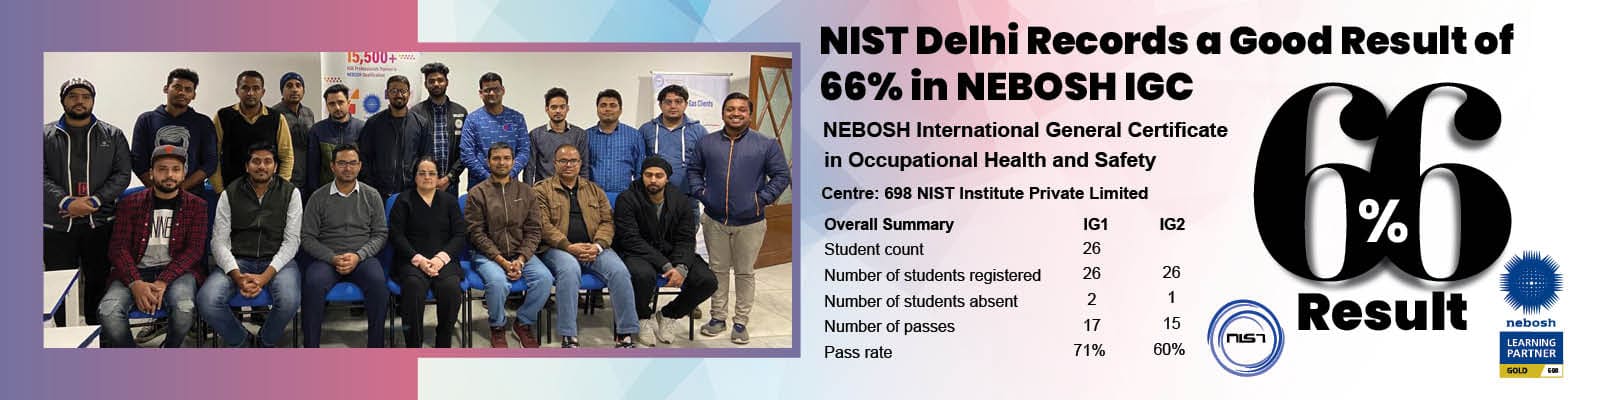 nist-delhi-records-a-fair-66-result-in-nebosh-igc